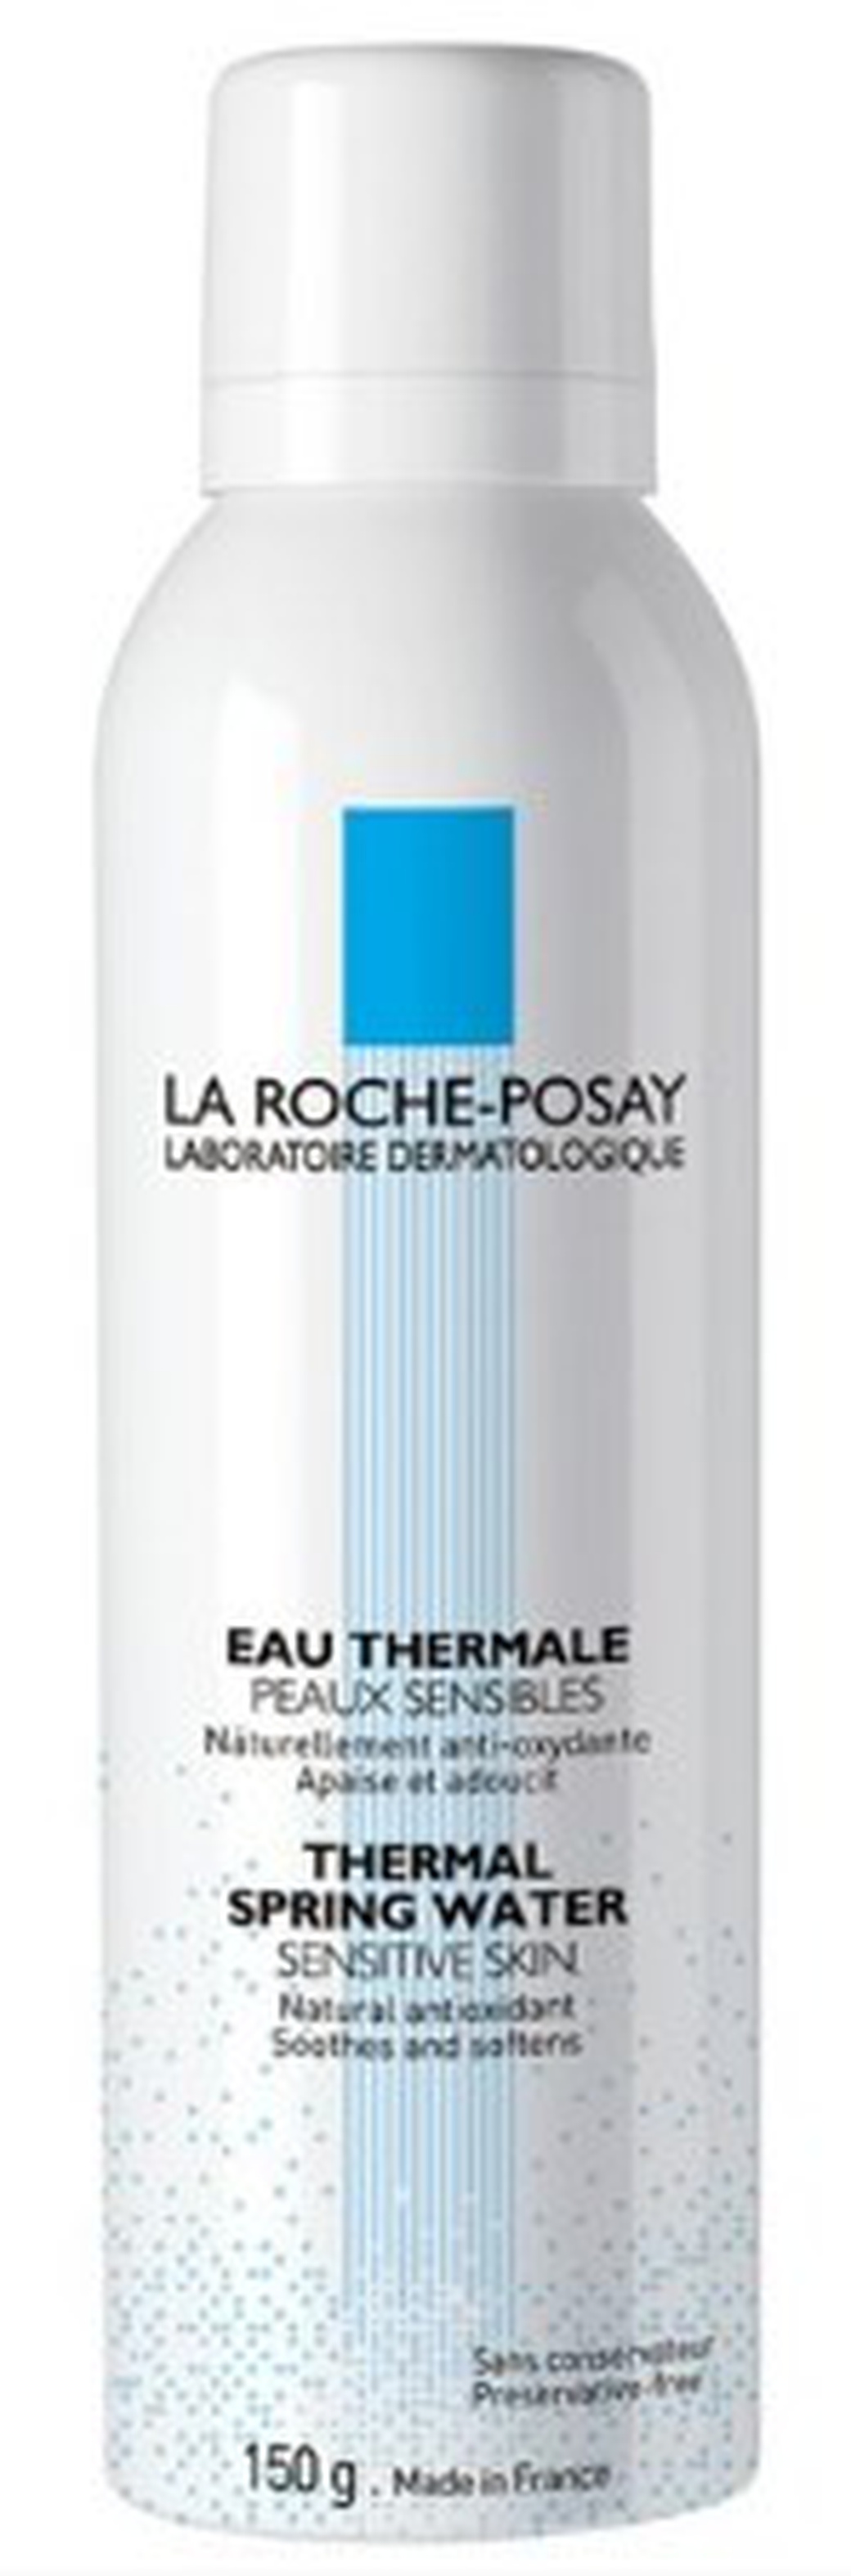 La Roche-Posay термальная вода 150мл фото